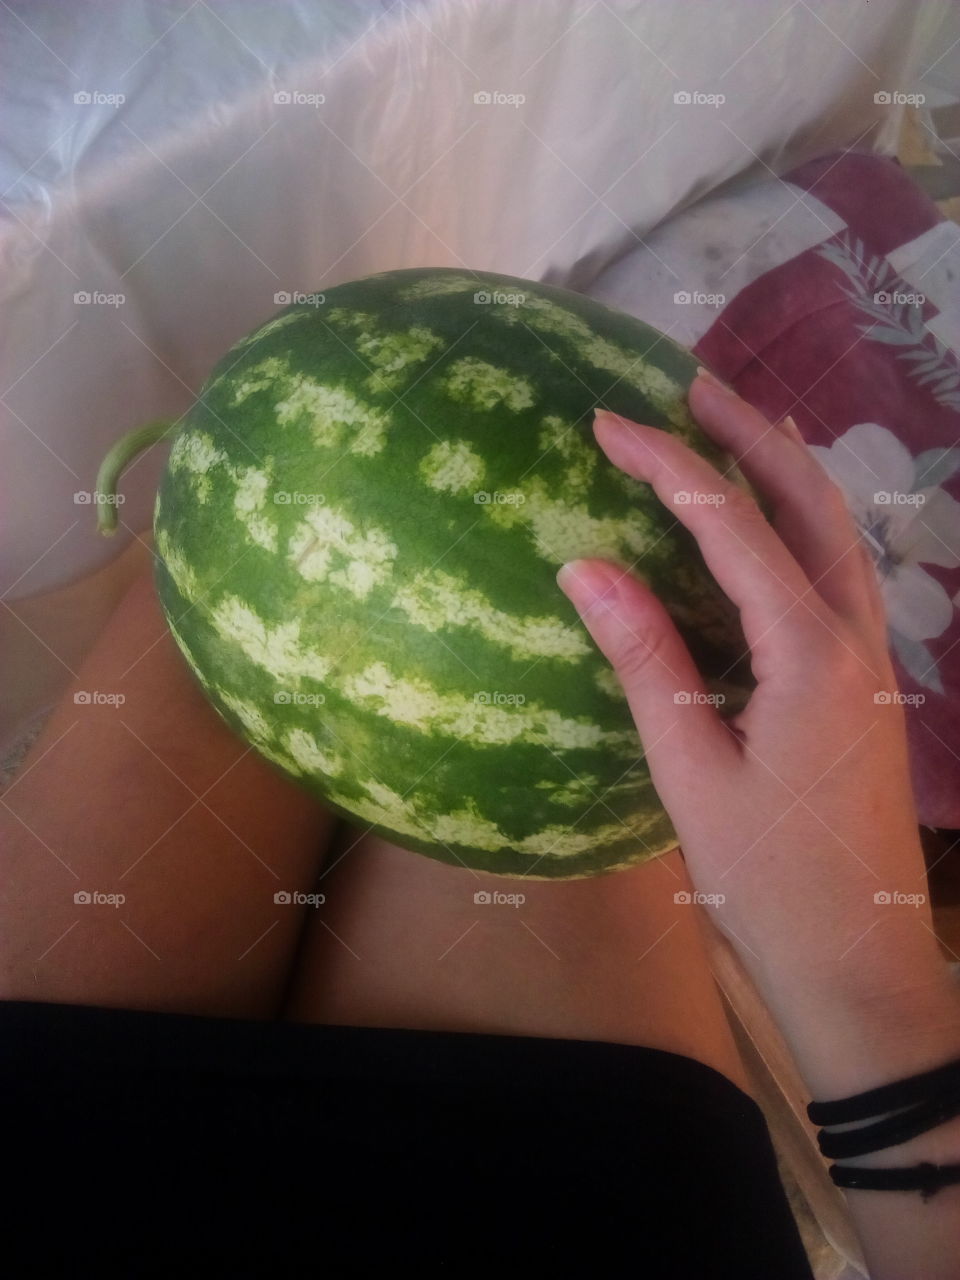 watermelon from my own garden